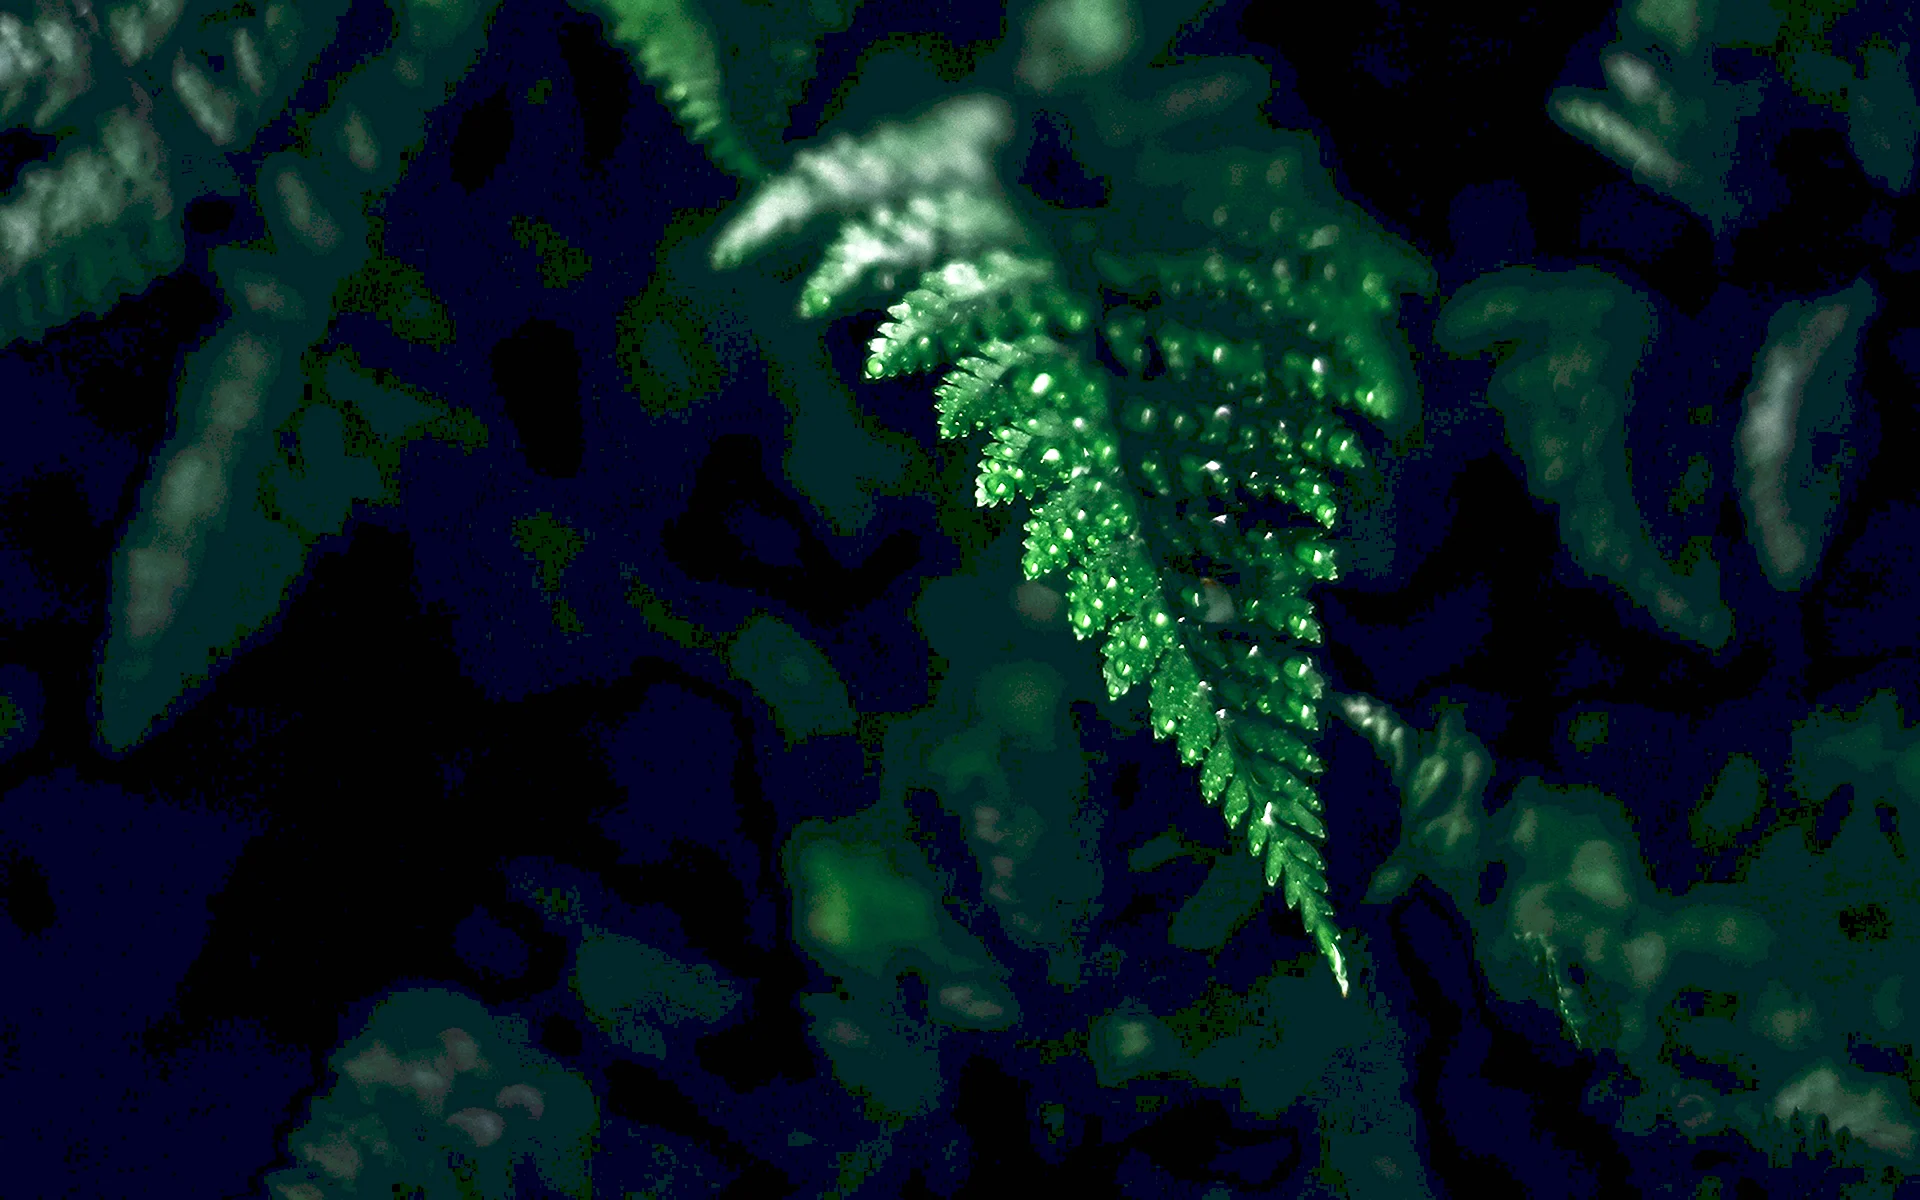 Темно зеленые листья